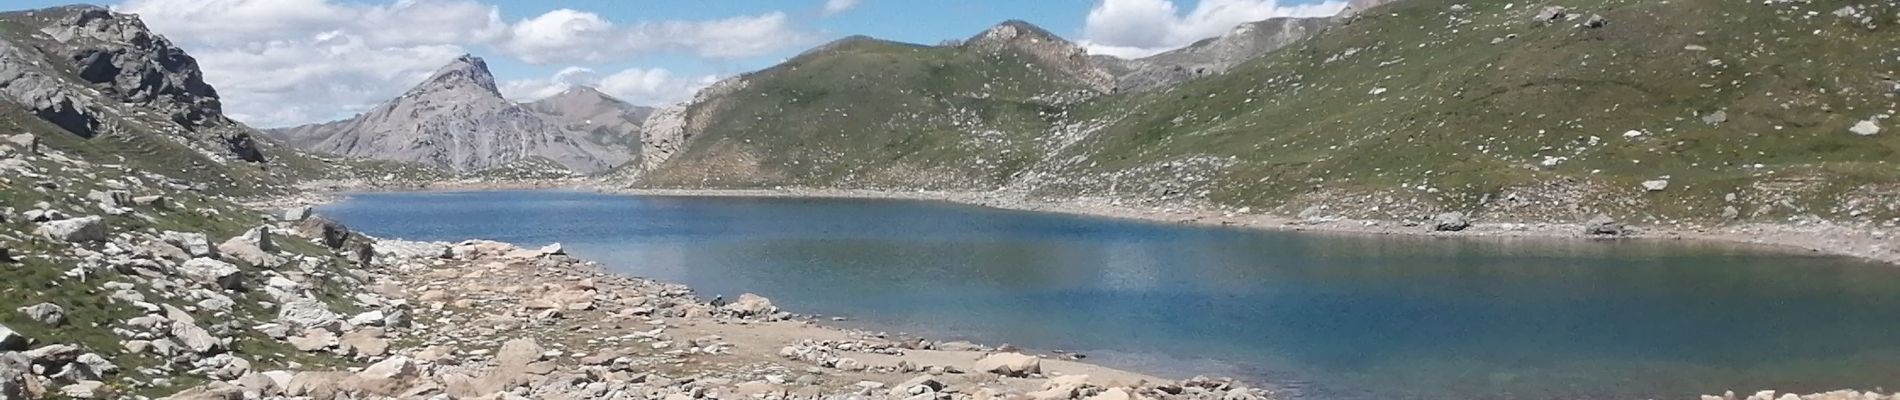 Excursión Senderismo Saint-Paul-sur-Ubaye - lacs de roure lac de martinet - Photo